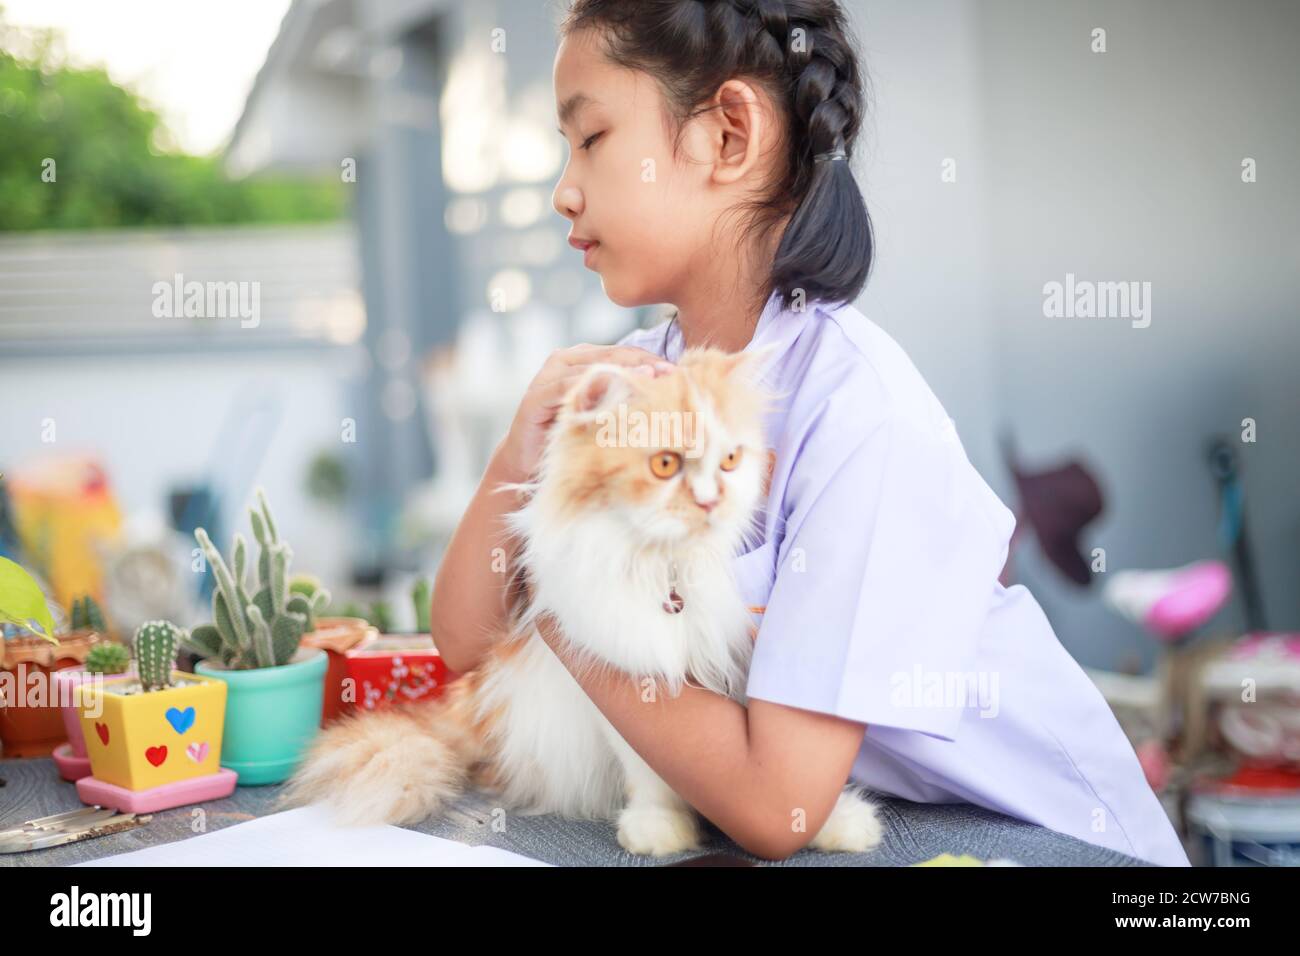 Porträt eines kleinen asiatischen Mädchen in Thai-Studentenuniform umarmt ihre persische Katze mit Glück, wählen Sie Fokus flache Tiefe des Feldes Stockfoto